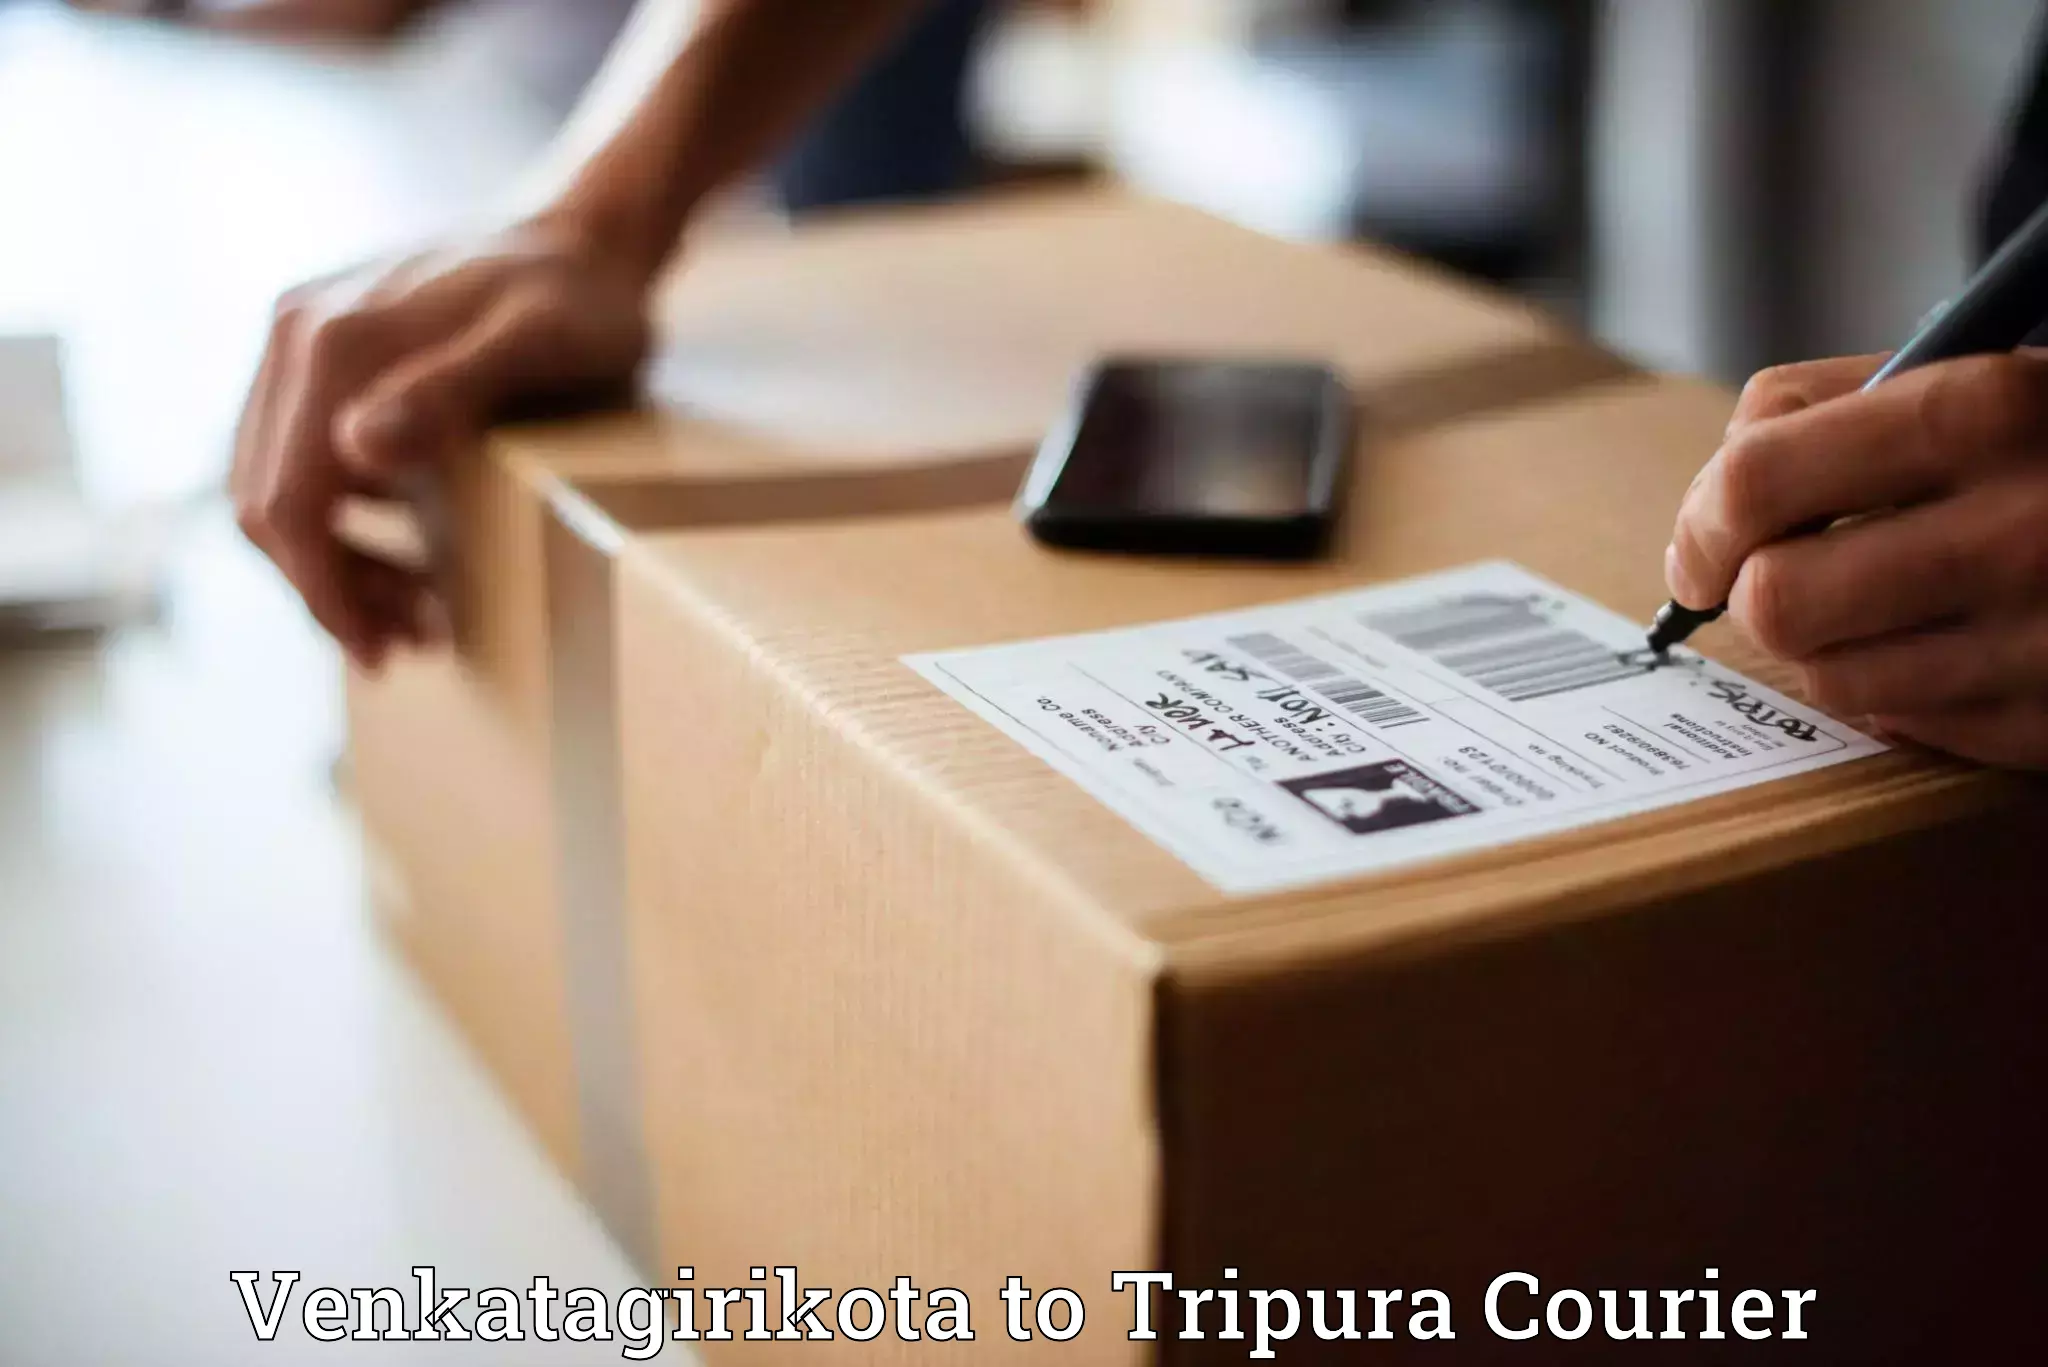 Modern delivery methods in Venkatagirikota to Tripura